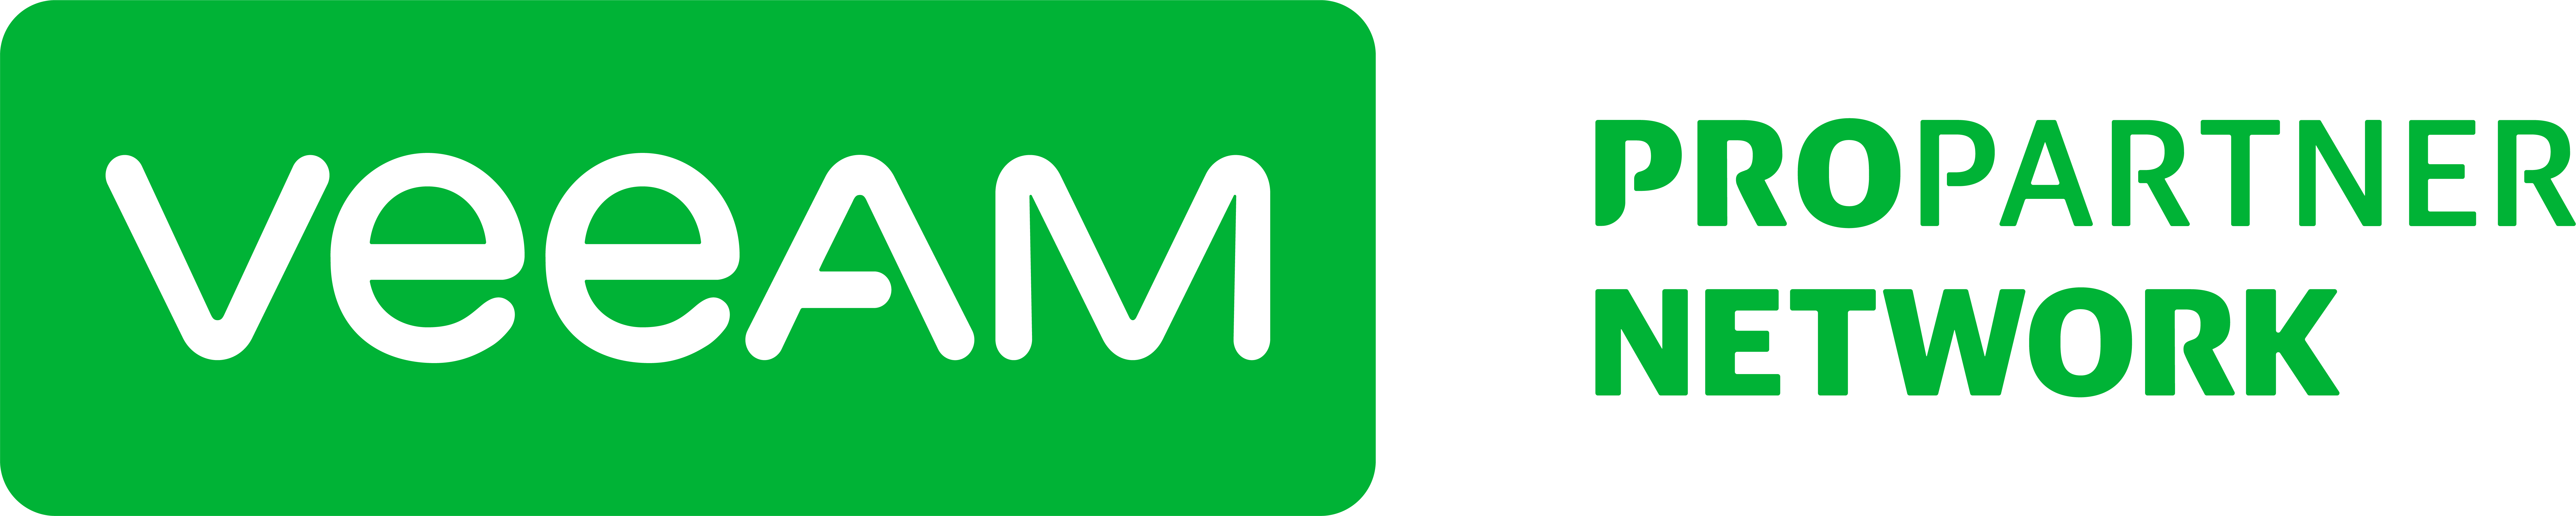 Veeam_ProPartner_Network_main_logo